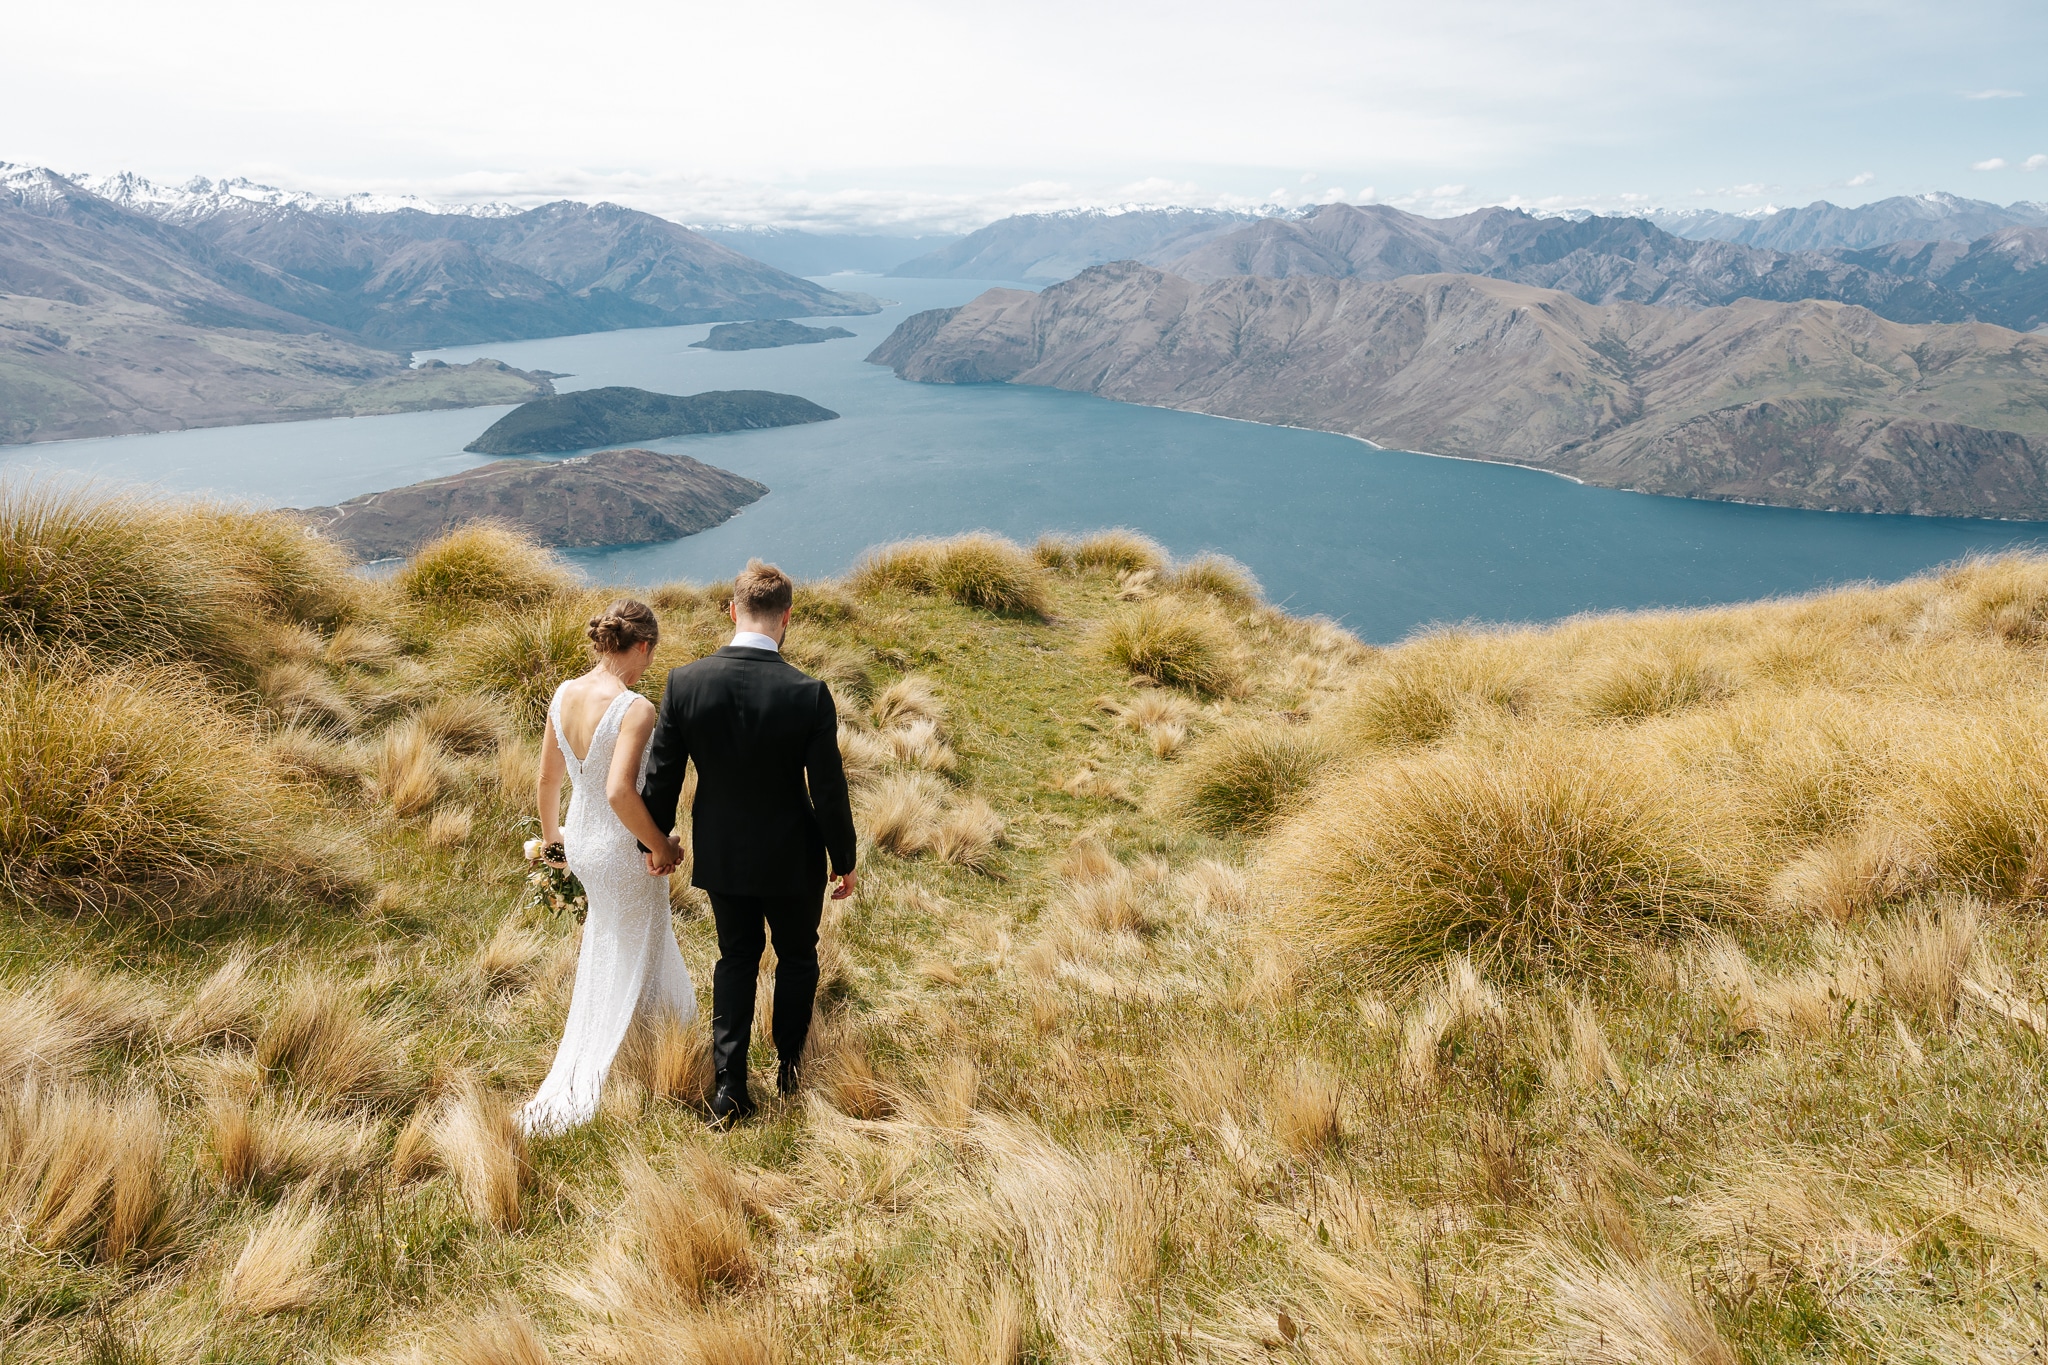 Luxury Elopement wedding in Queenstown New Zealand with helicopter wedding ceremony on Coromandel Peak